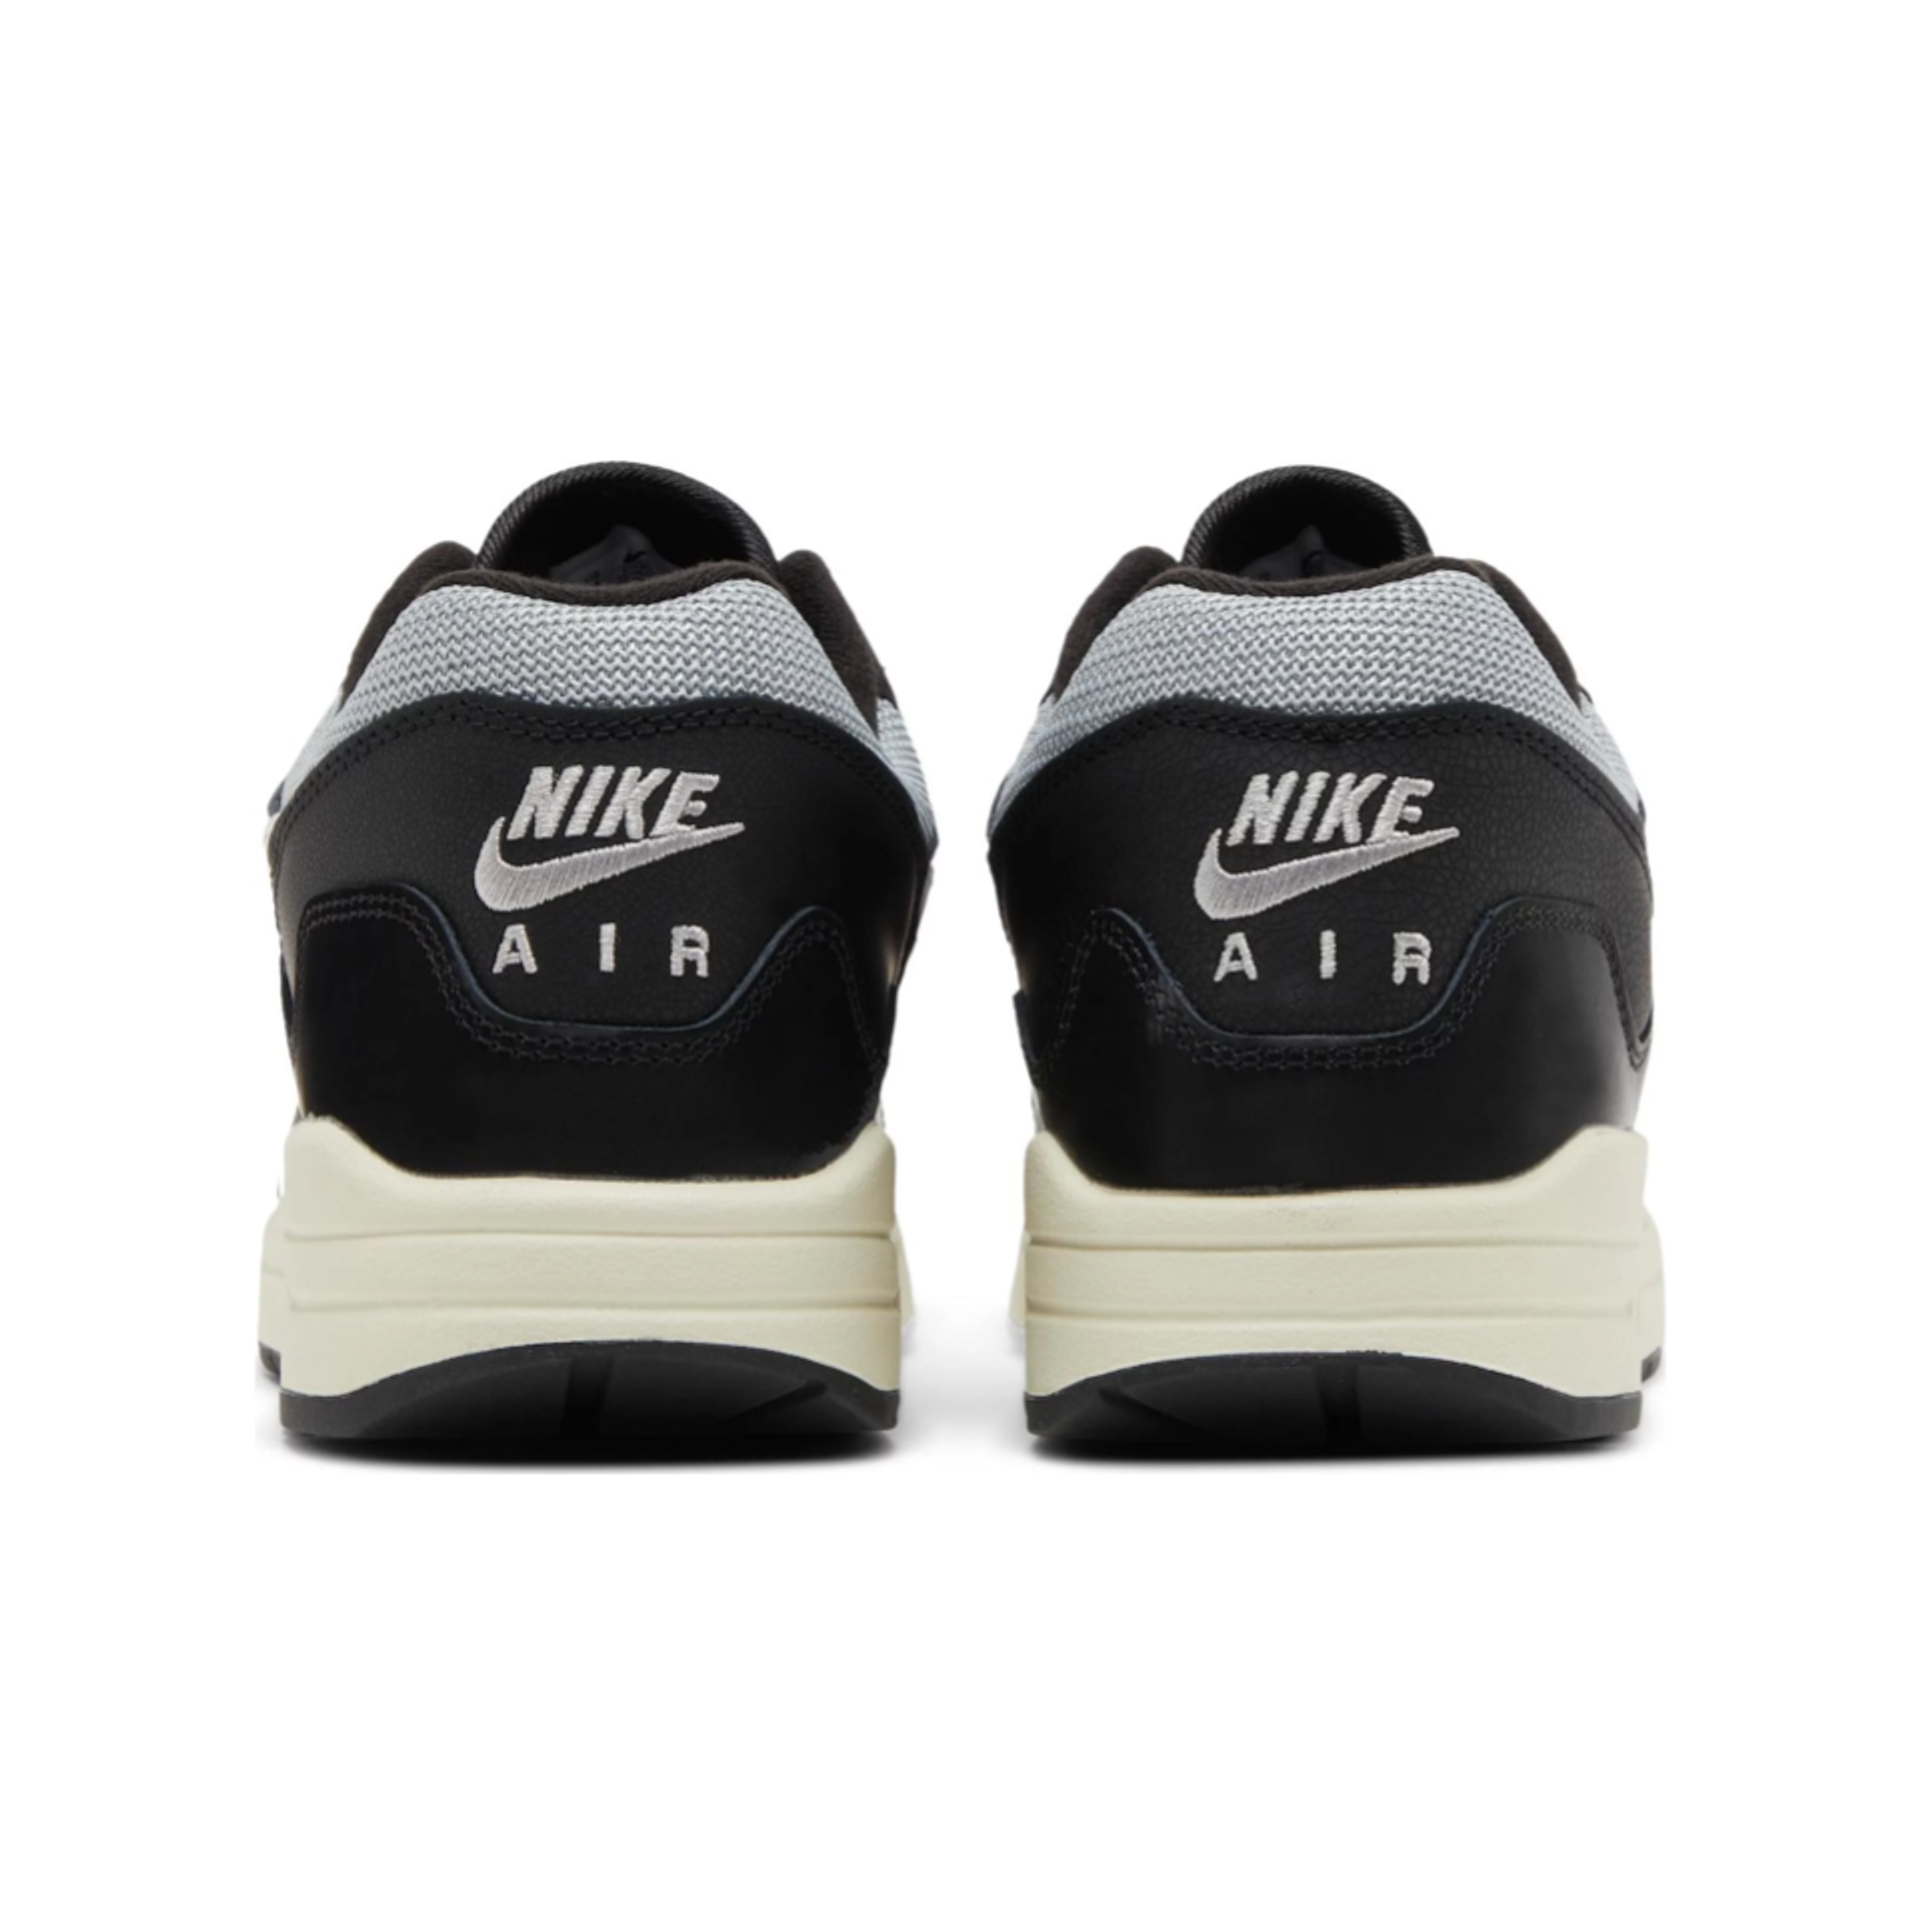 Nike Patta x Air Max 1 'Black'